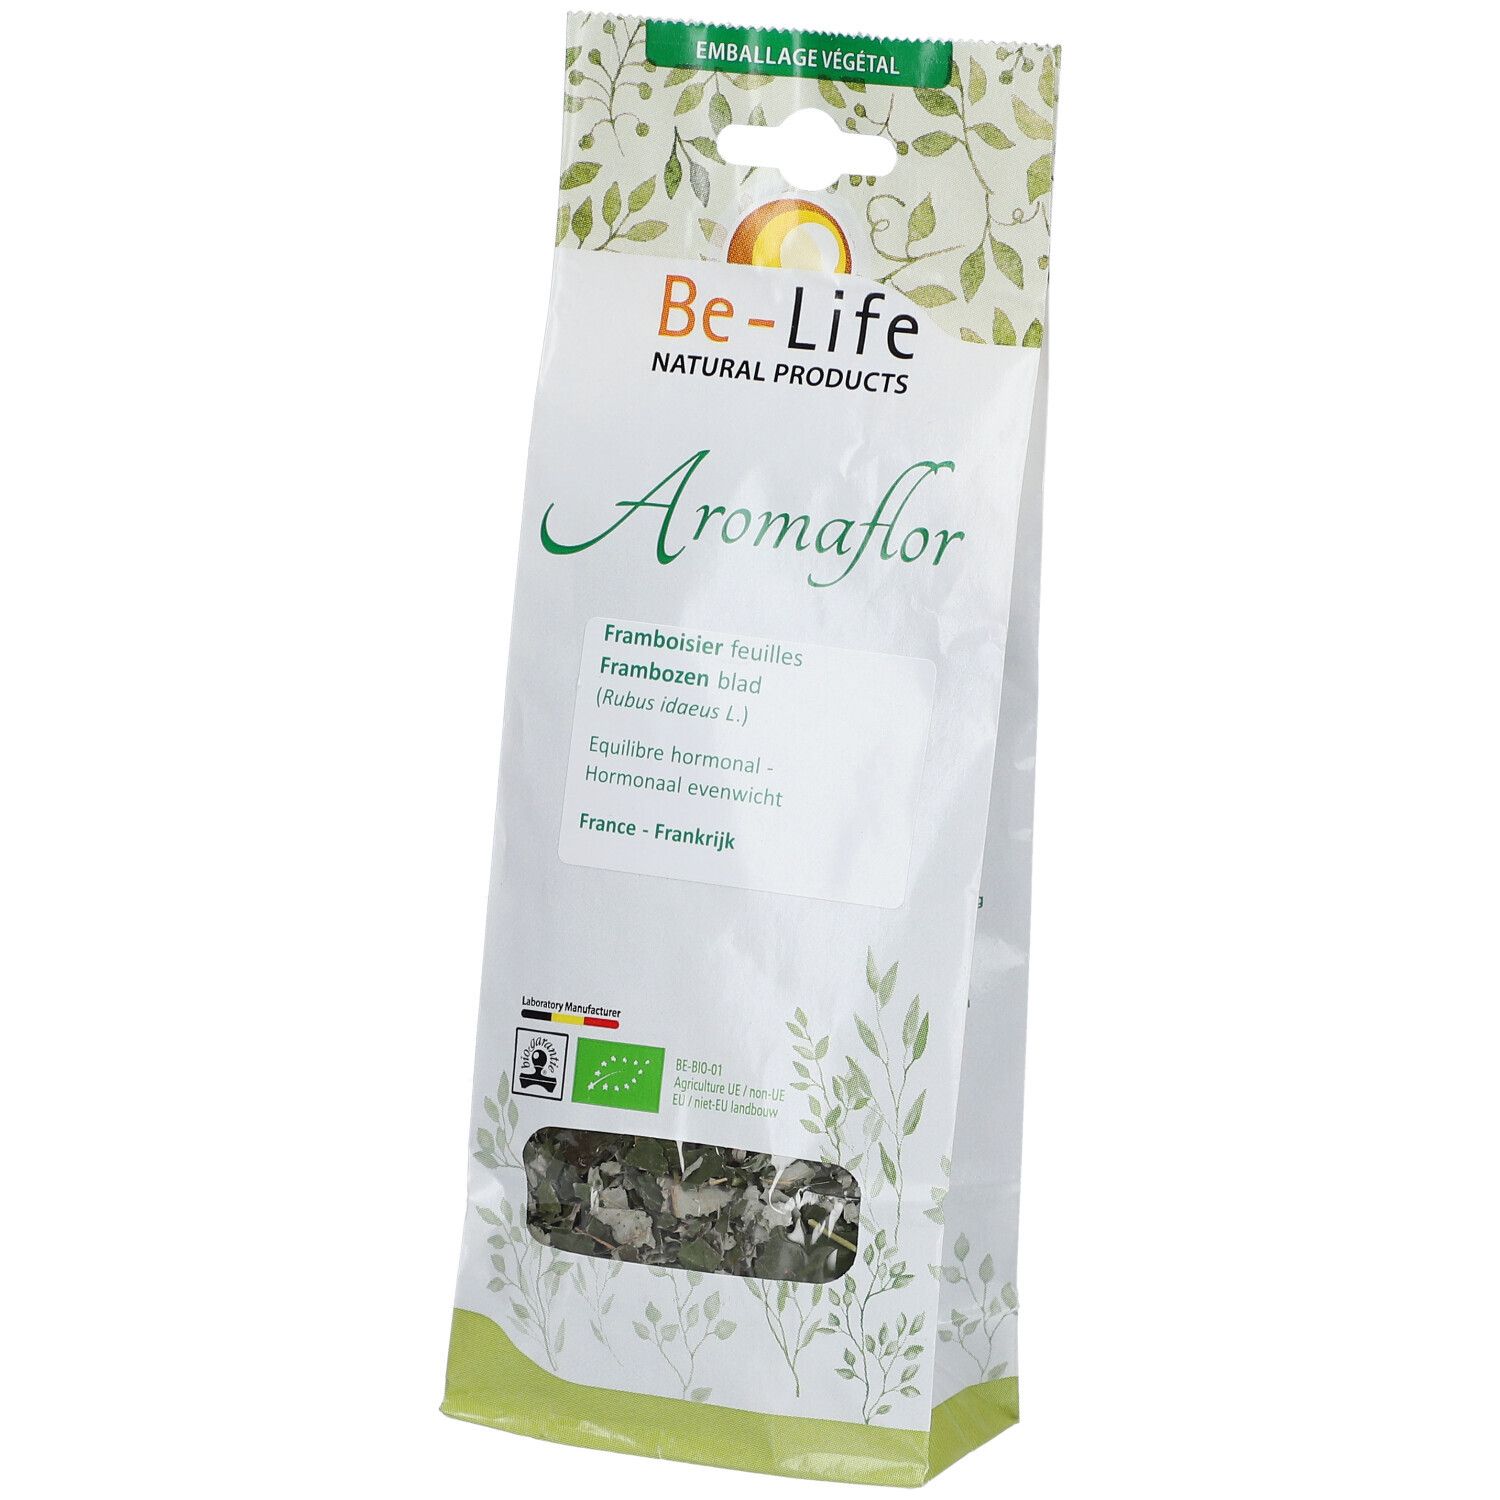 Be-Life Aromaflor Framboisier feuilles